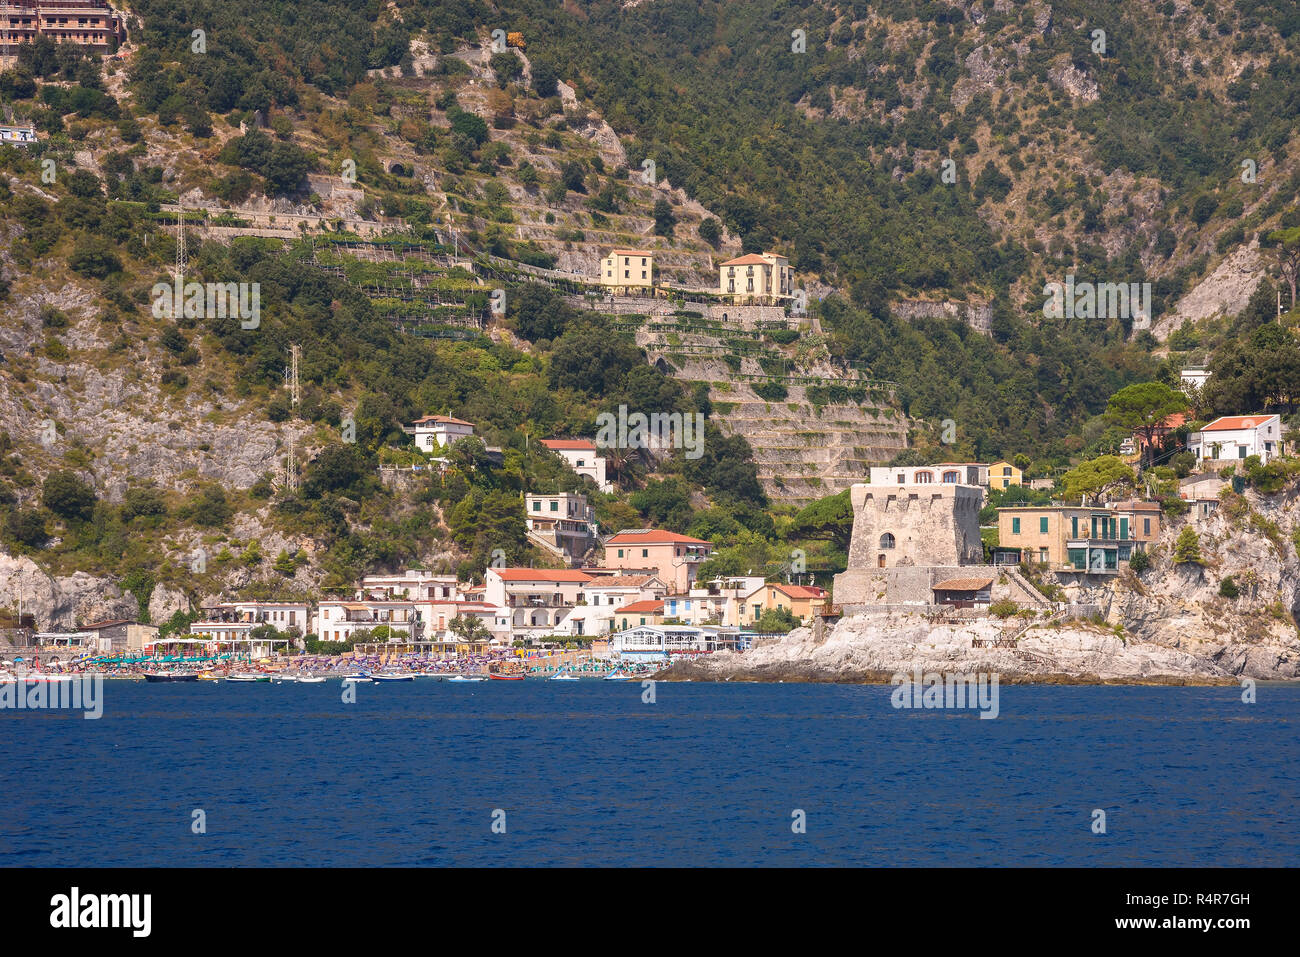 erchie village on amalfi coast seen from the sea Stock Photo